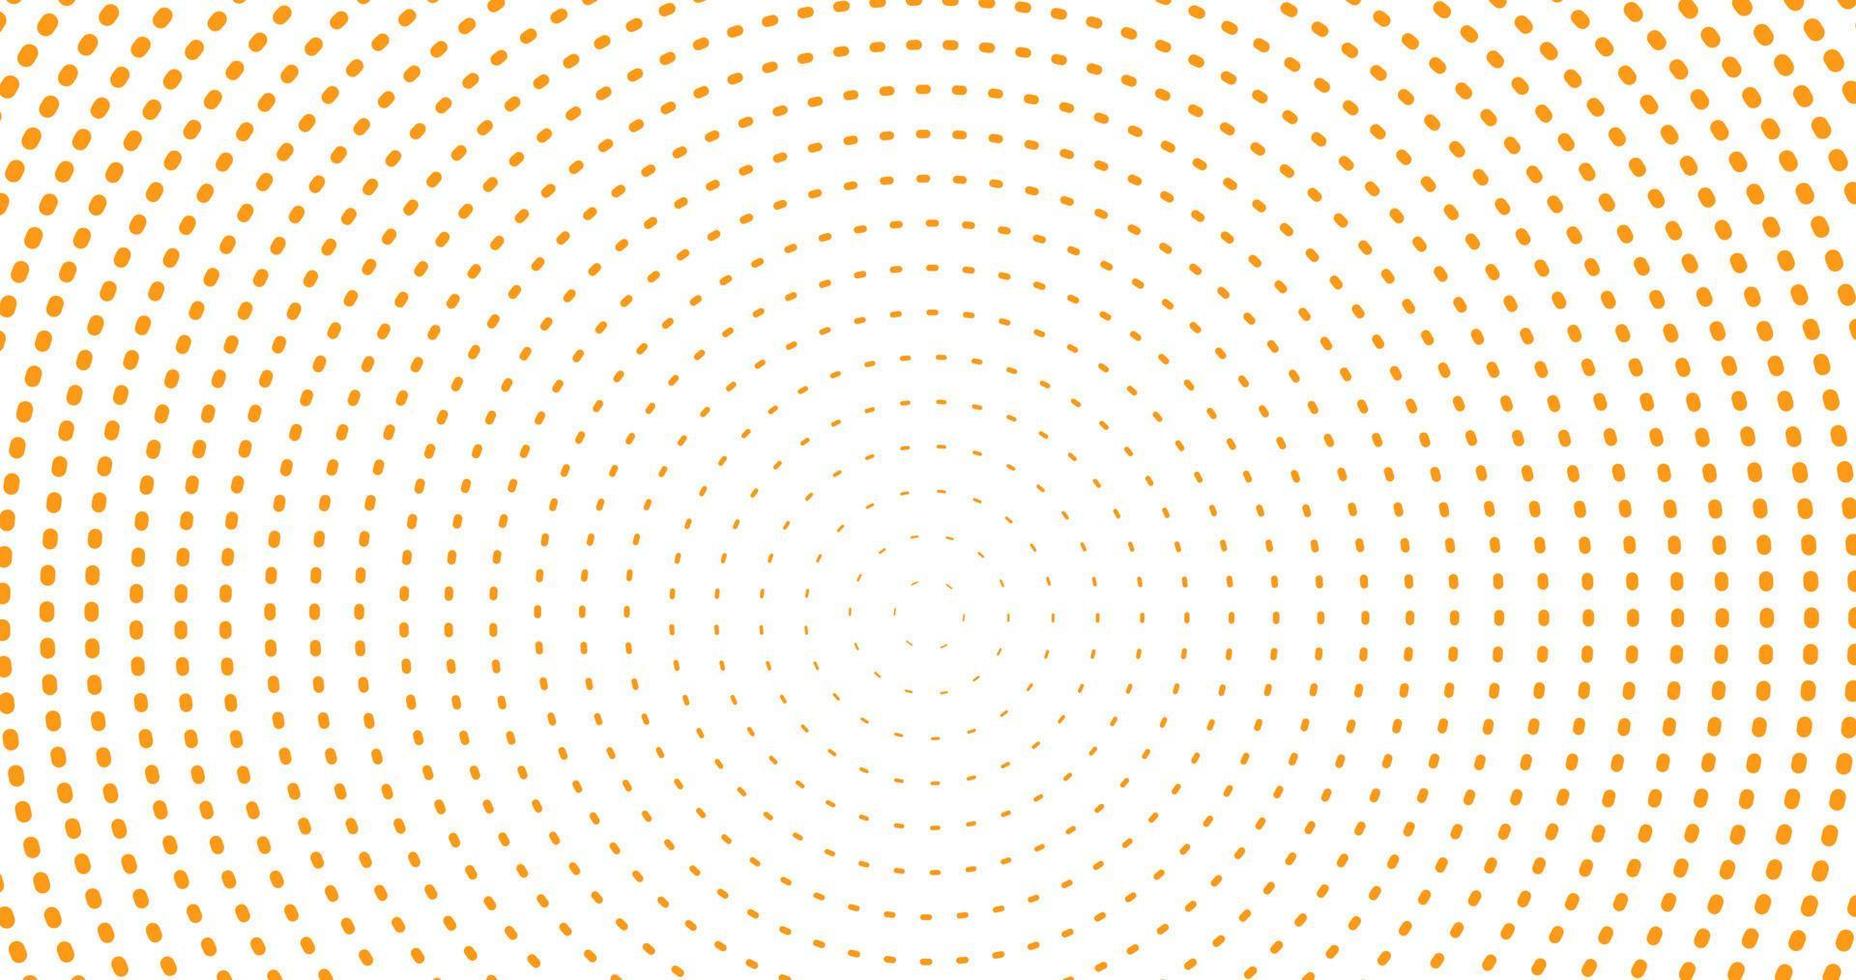 patrón circular repetidamente en estilo de puntos para el fondo por vector